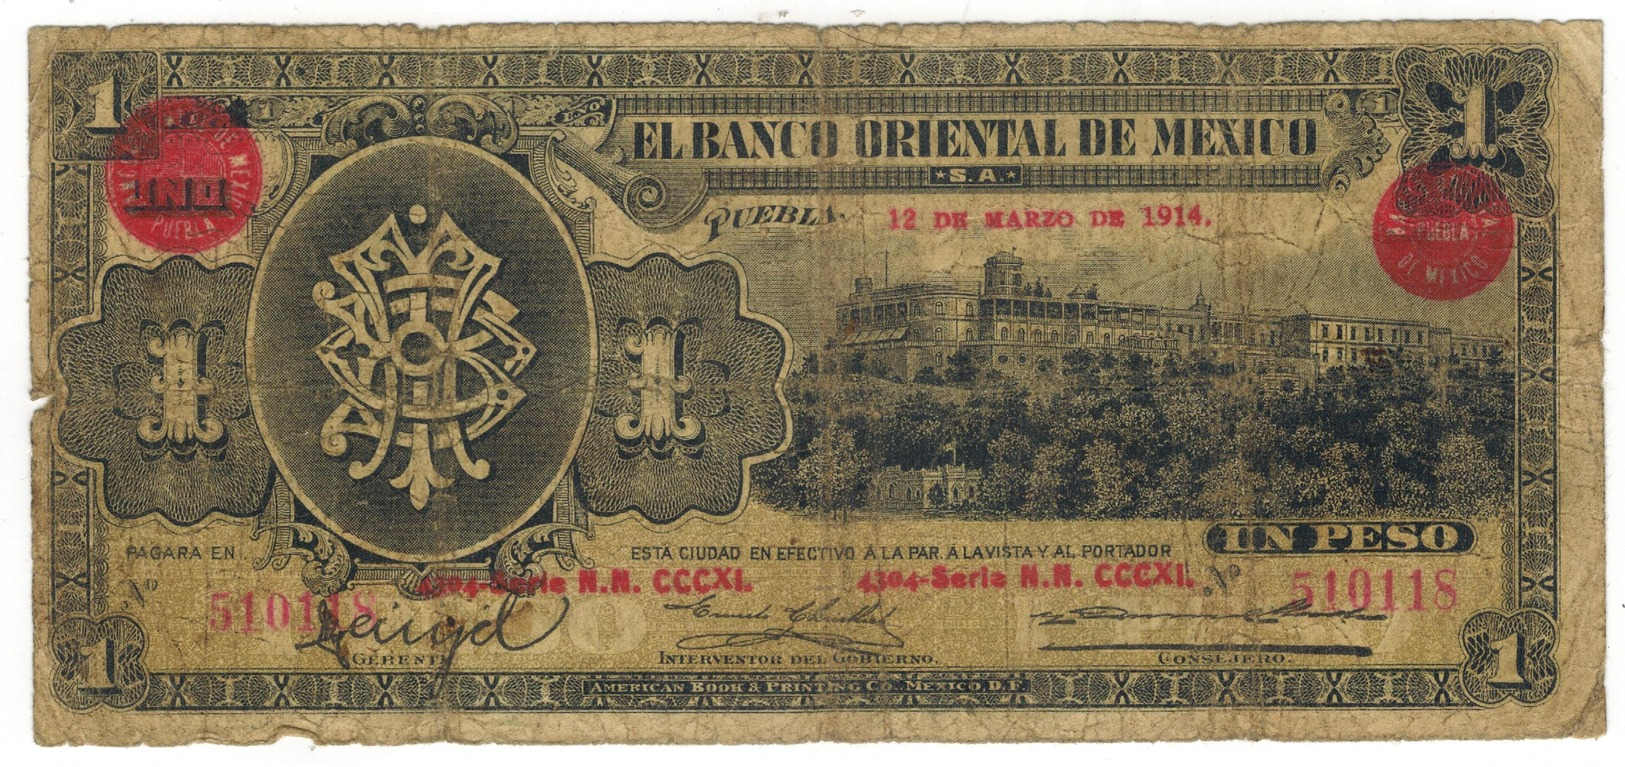 Mexico, 1 Peso , EL BANCO ORIENTAL DE MEXICO, 1914, Used, See Scan. - Messico